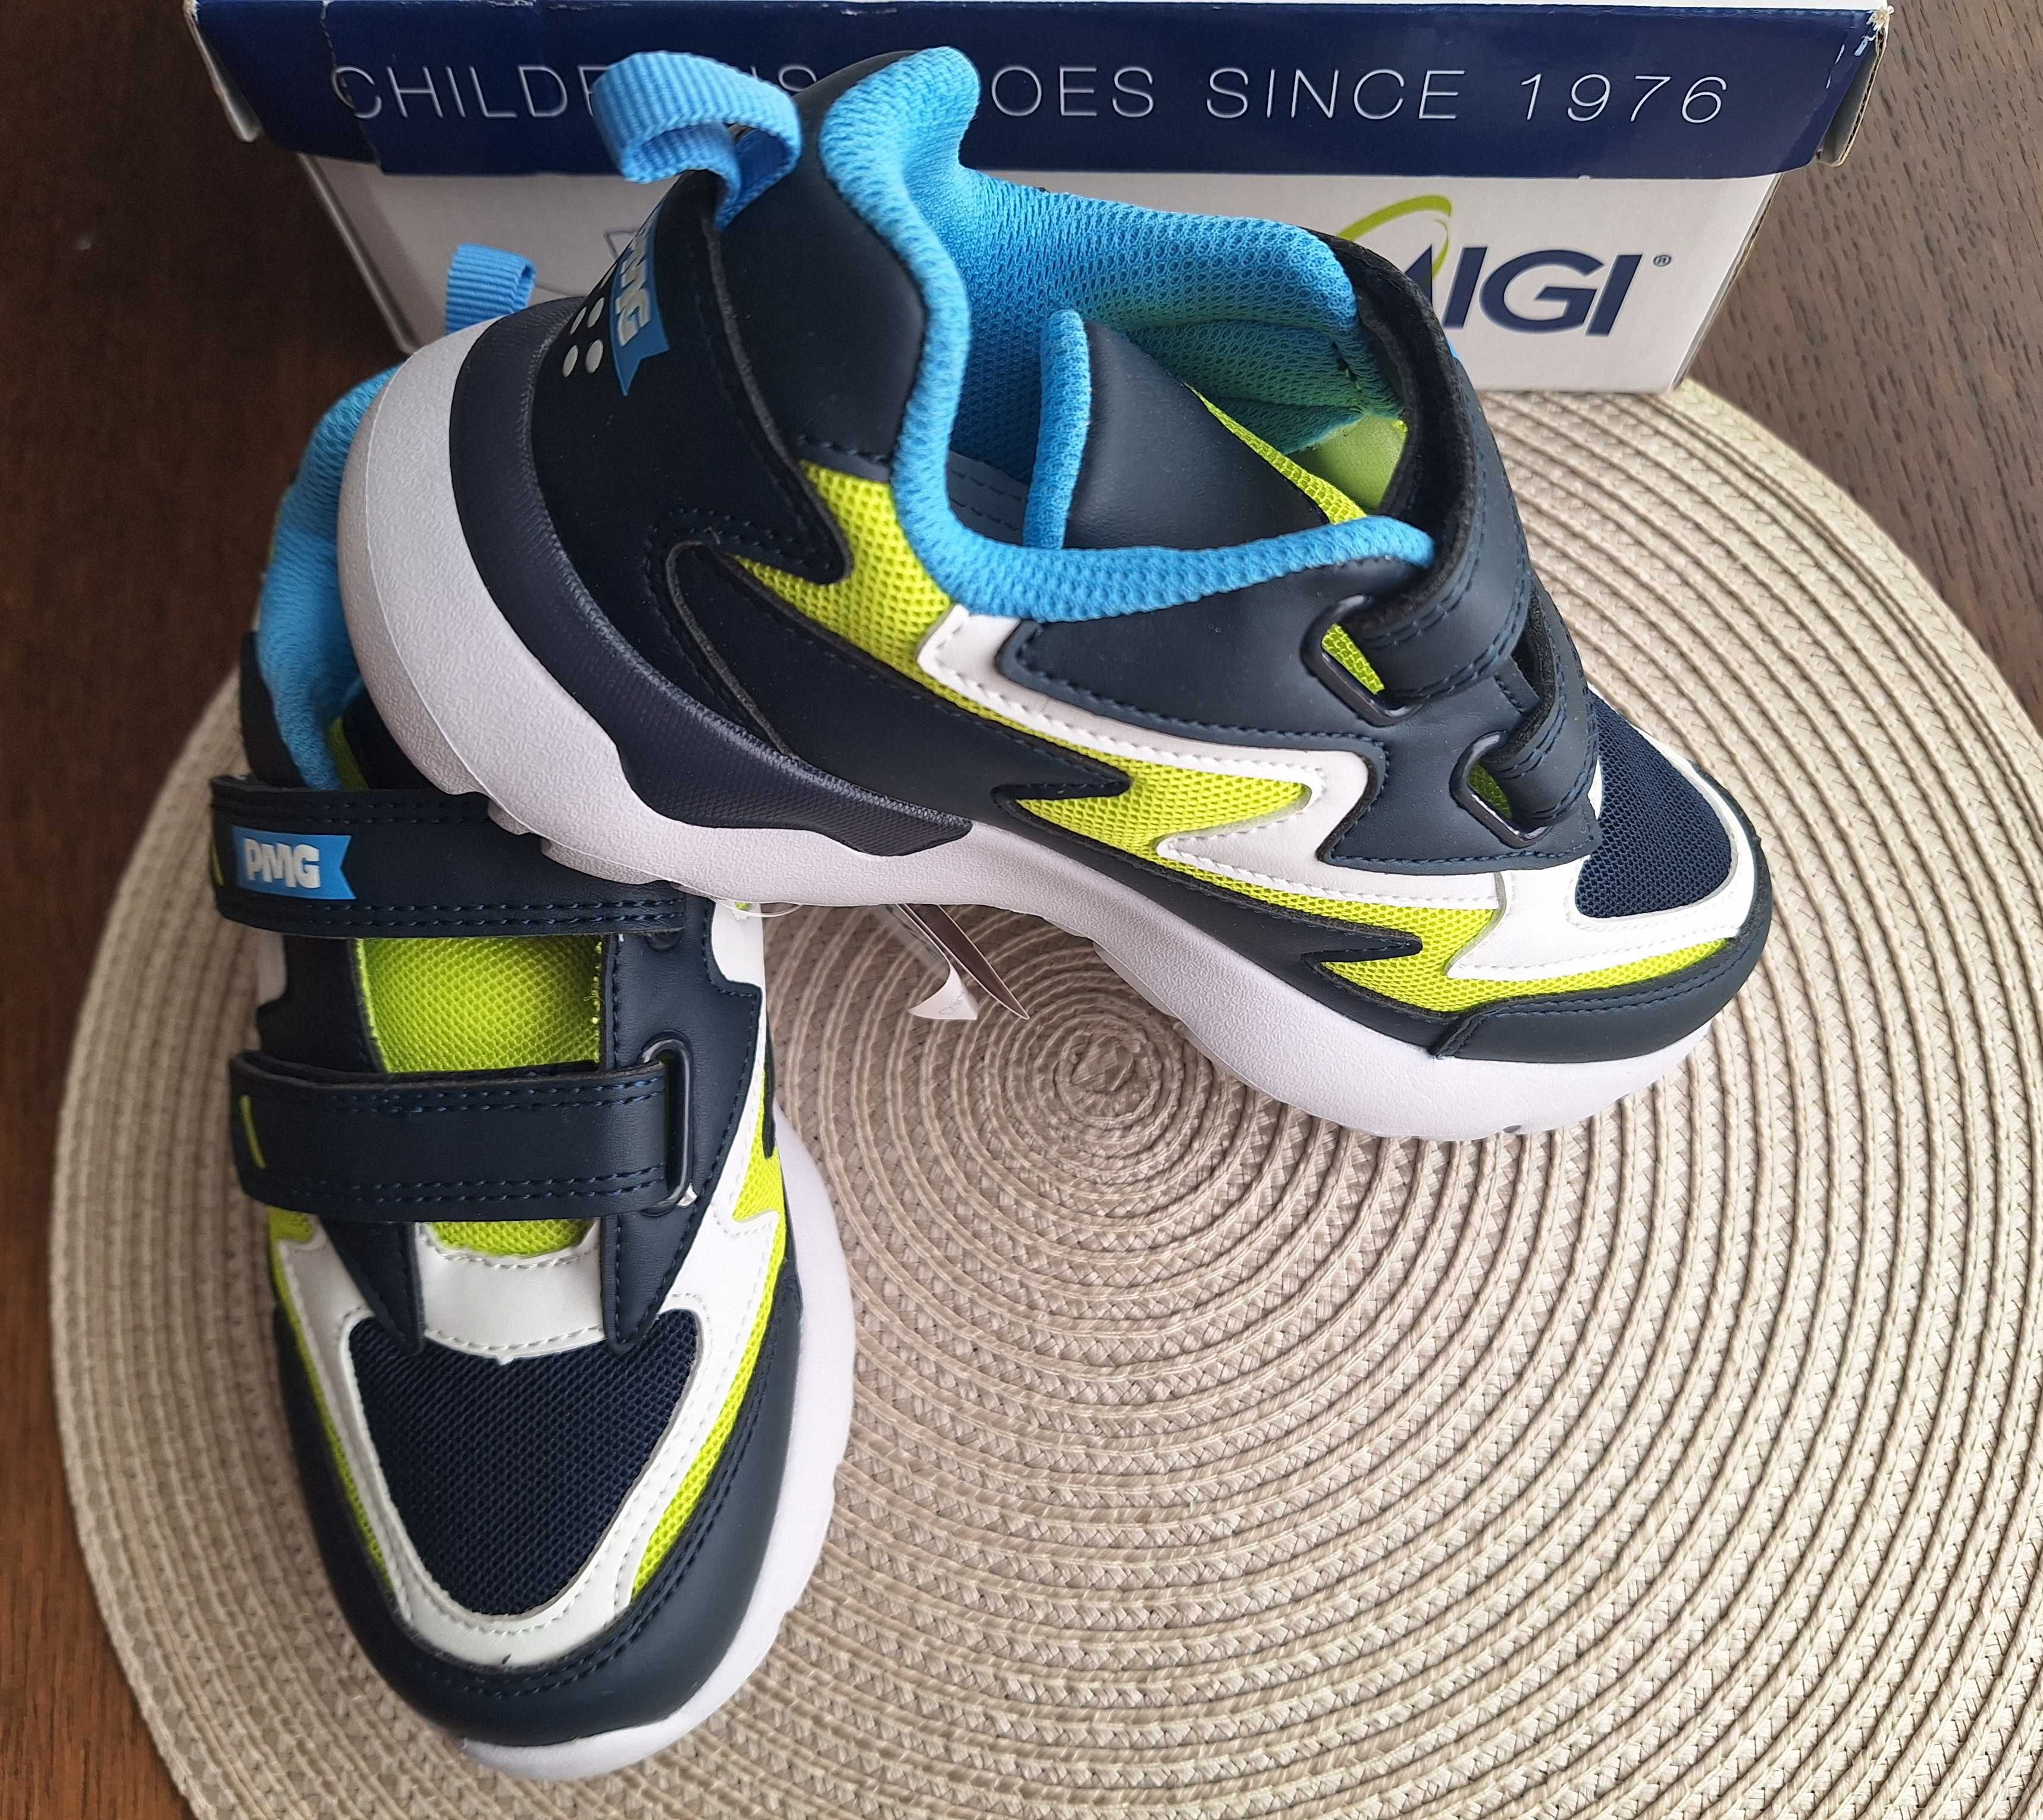 Нови обувки/сникърси/маратонки на Geox, Puma, Biomecanics - 31 н.